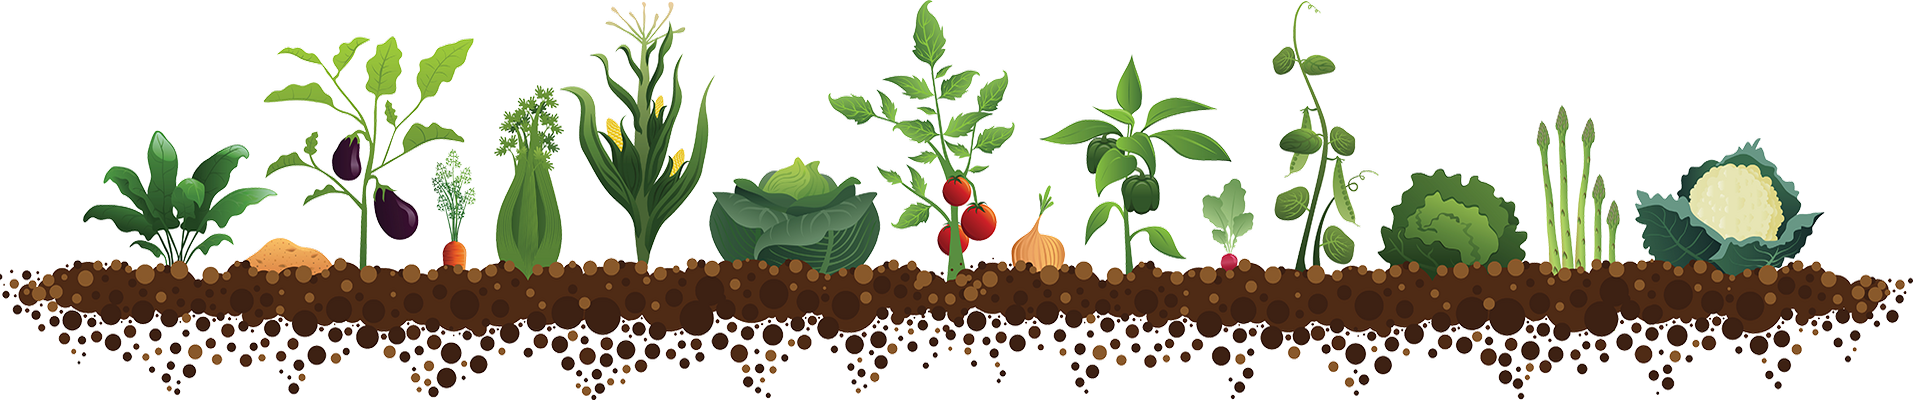 Насіння огірків в теплицю і грунт травень 2020 посів насіння розсади, сіяти, садити огірки у відкритий